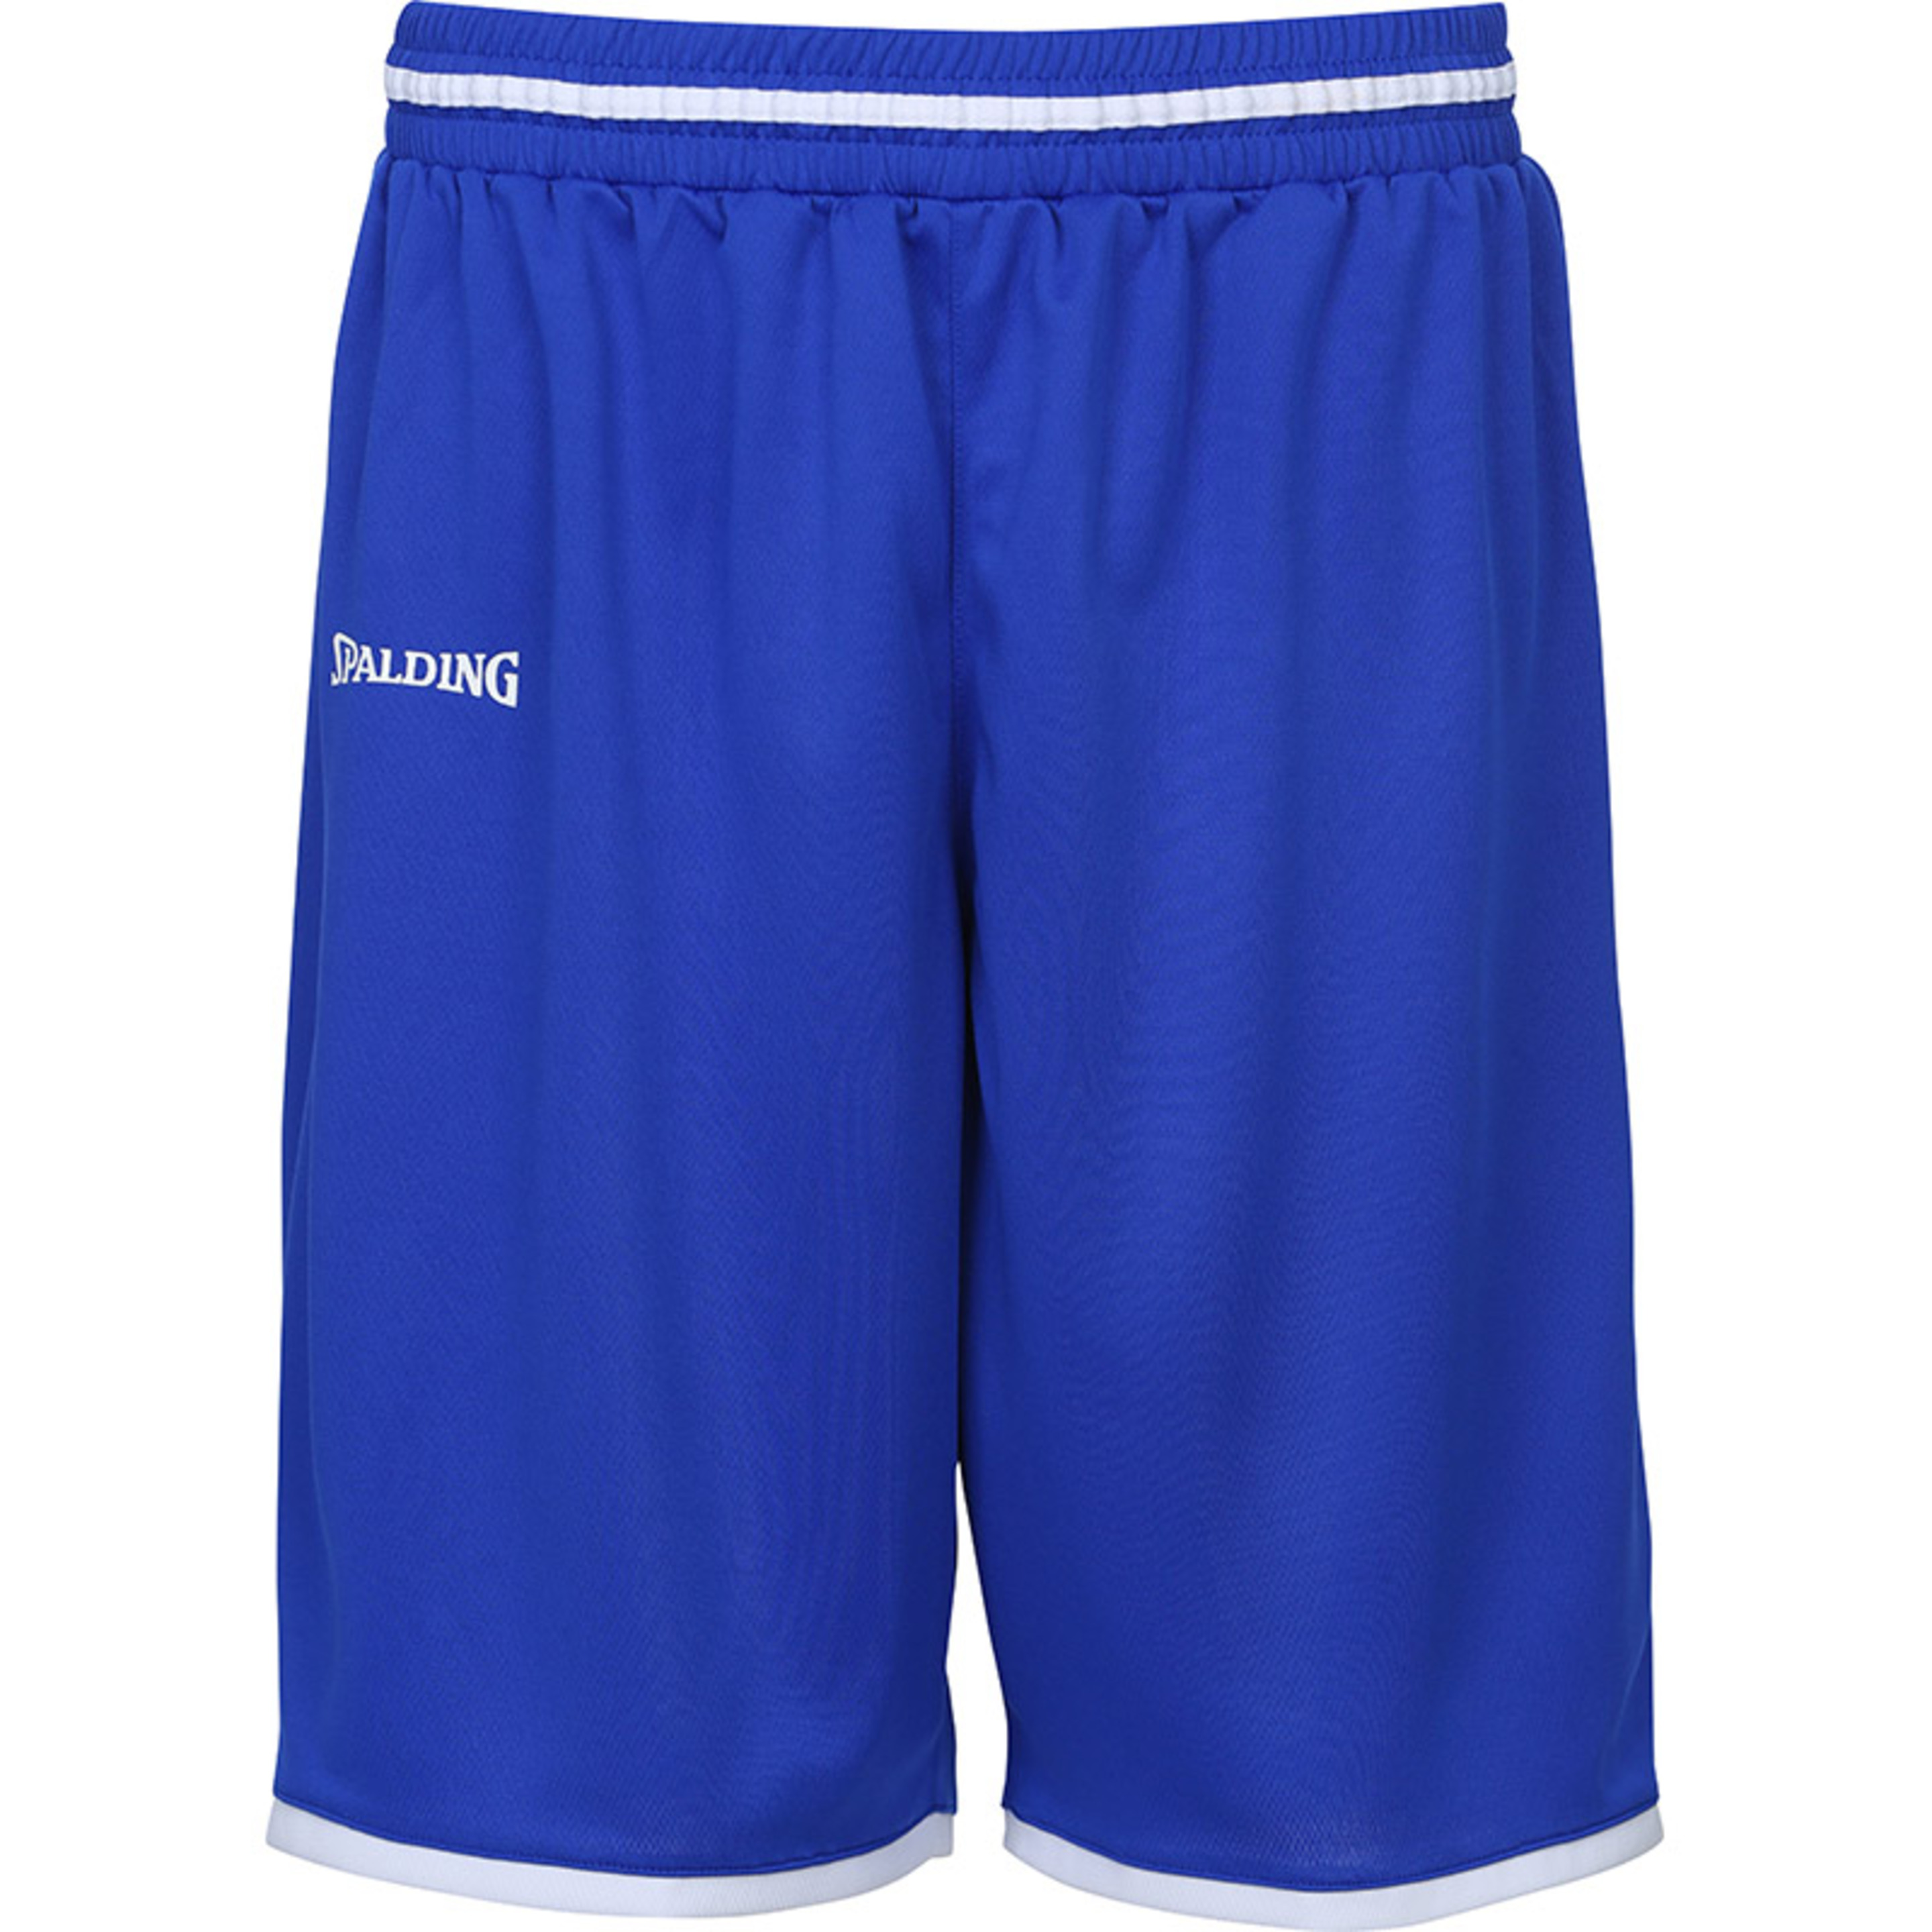 Move Shorts  Spalding - Azul  MKP